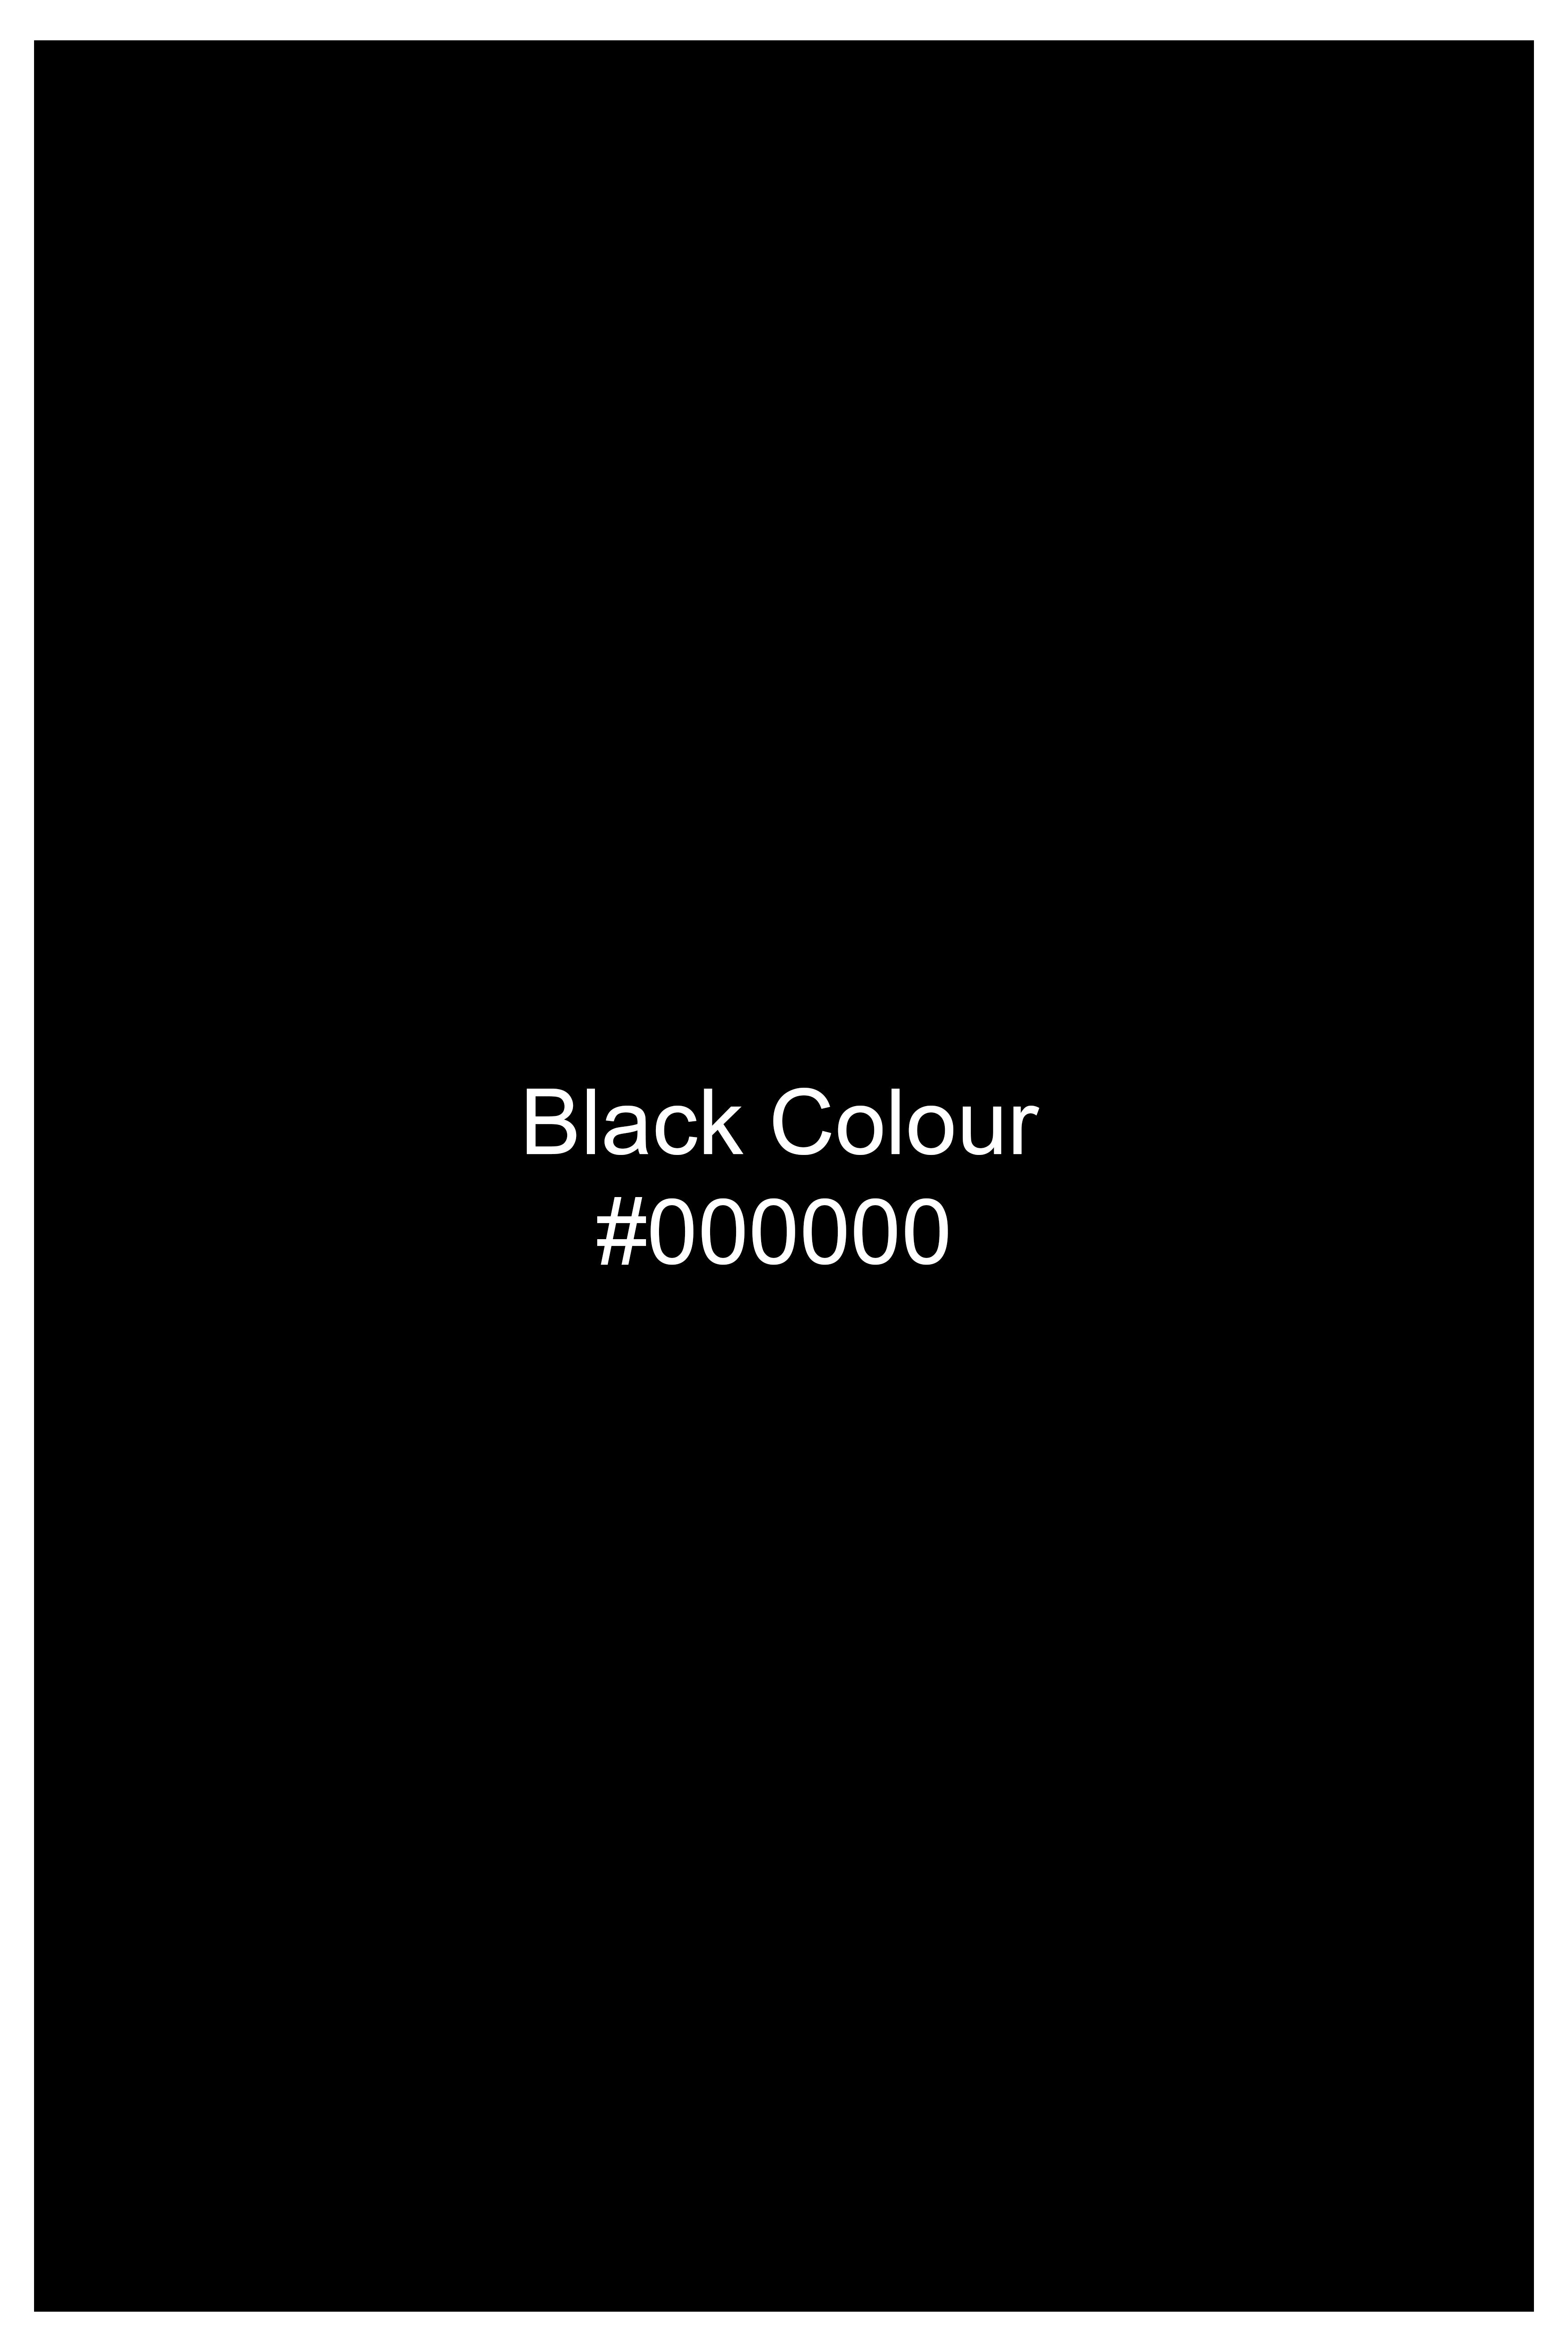 Jade Black Wool Rich Waistcoat V3052-36, V3052-38, V3052-40, V3052-42, V3052-44, V3052-46, V3052-48, V3052-50, V3052-52, V3052-54, V3052-56, V3052-58, V3052-60